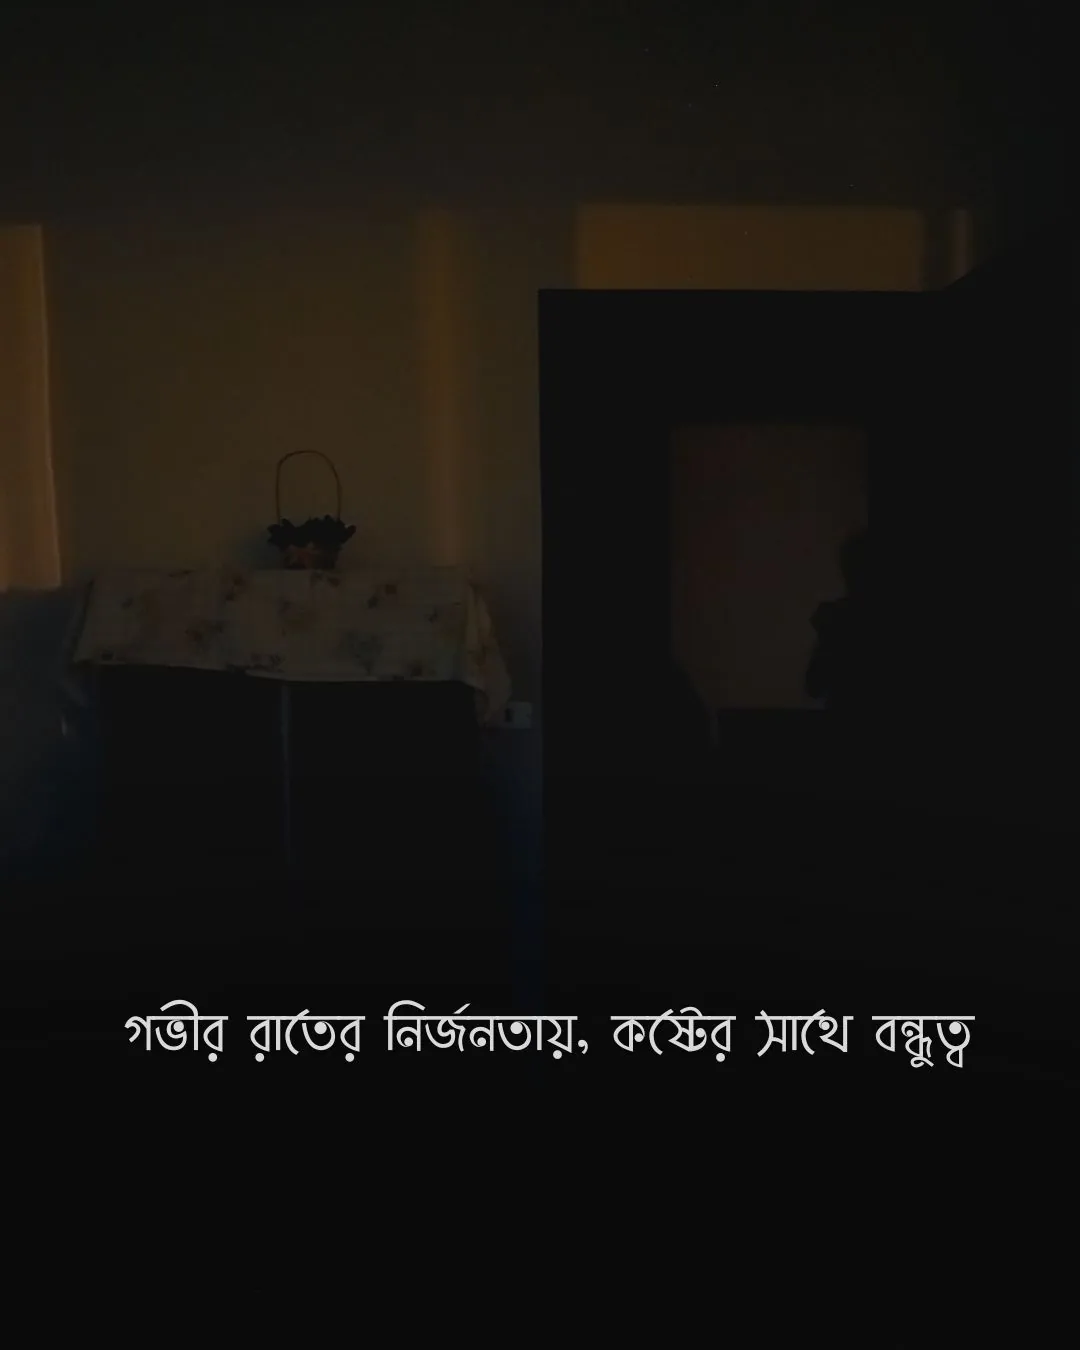 গভীর রাতের নির্জনতায়, কষ্টের সাথে বন্ধুত্ব - sadness pic bangla